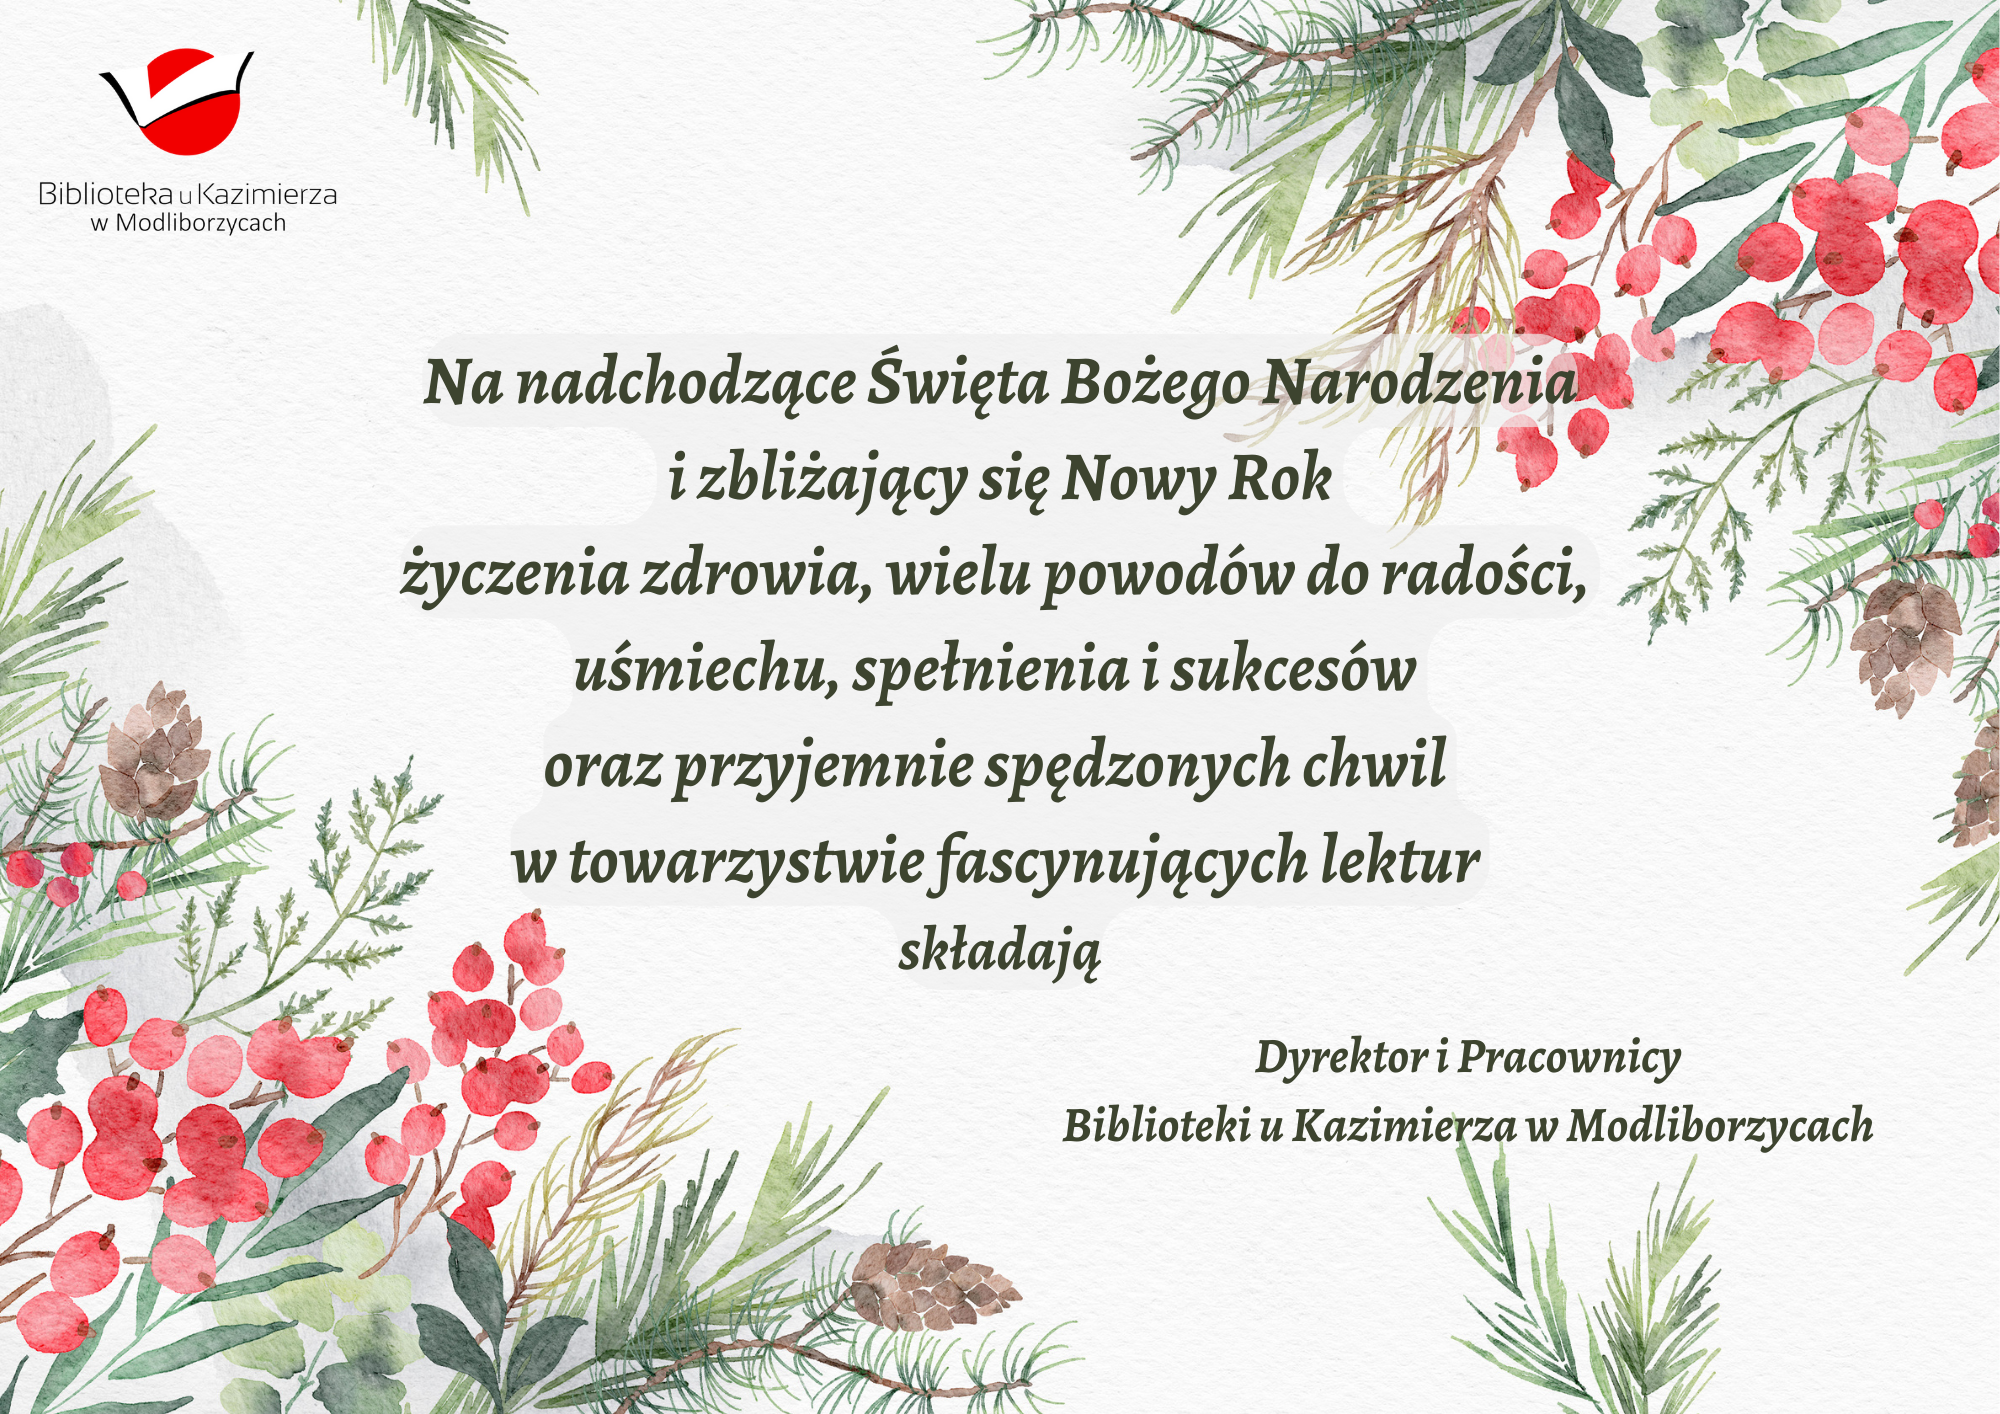 Na nadchodzące Święta Bożego Narodzenia  i zbliżający się Nowy Rok  życzenia zdrowia, wielu powodów do radości,  uśmiechu, spełnienia i sukcesów  oraz przyjemnie spędzonych chwil  w towarzystwie fascynujących lektur  składają Dyrektor i Pracownicy Biblioteki u Kazimierza w Modliborzycach